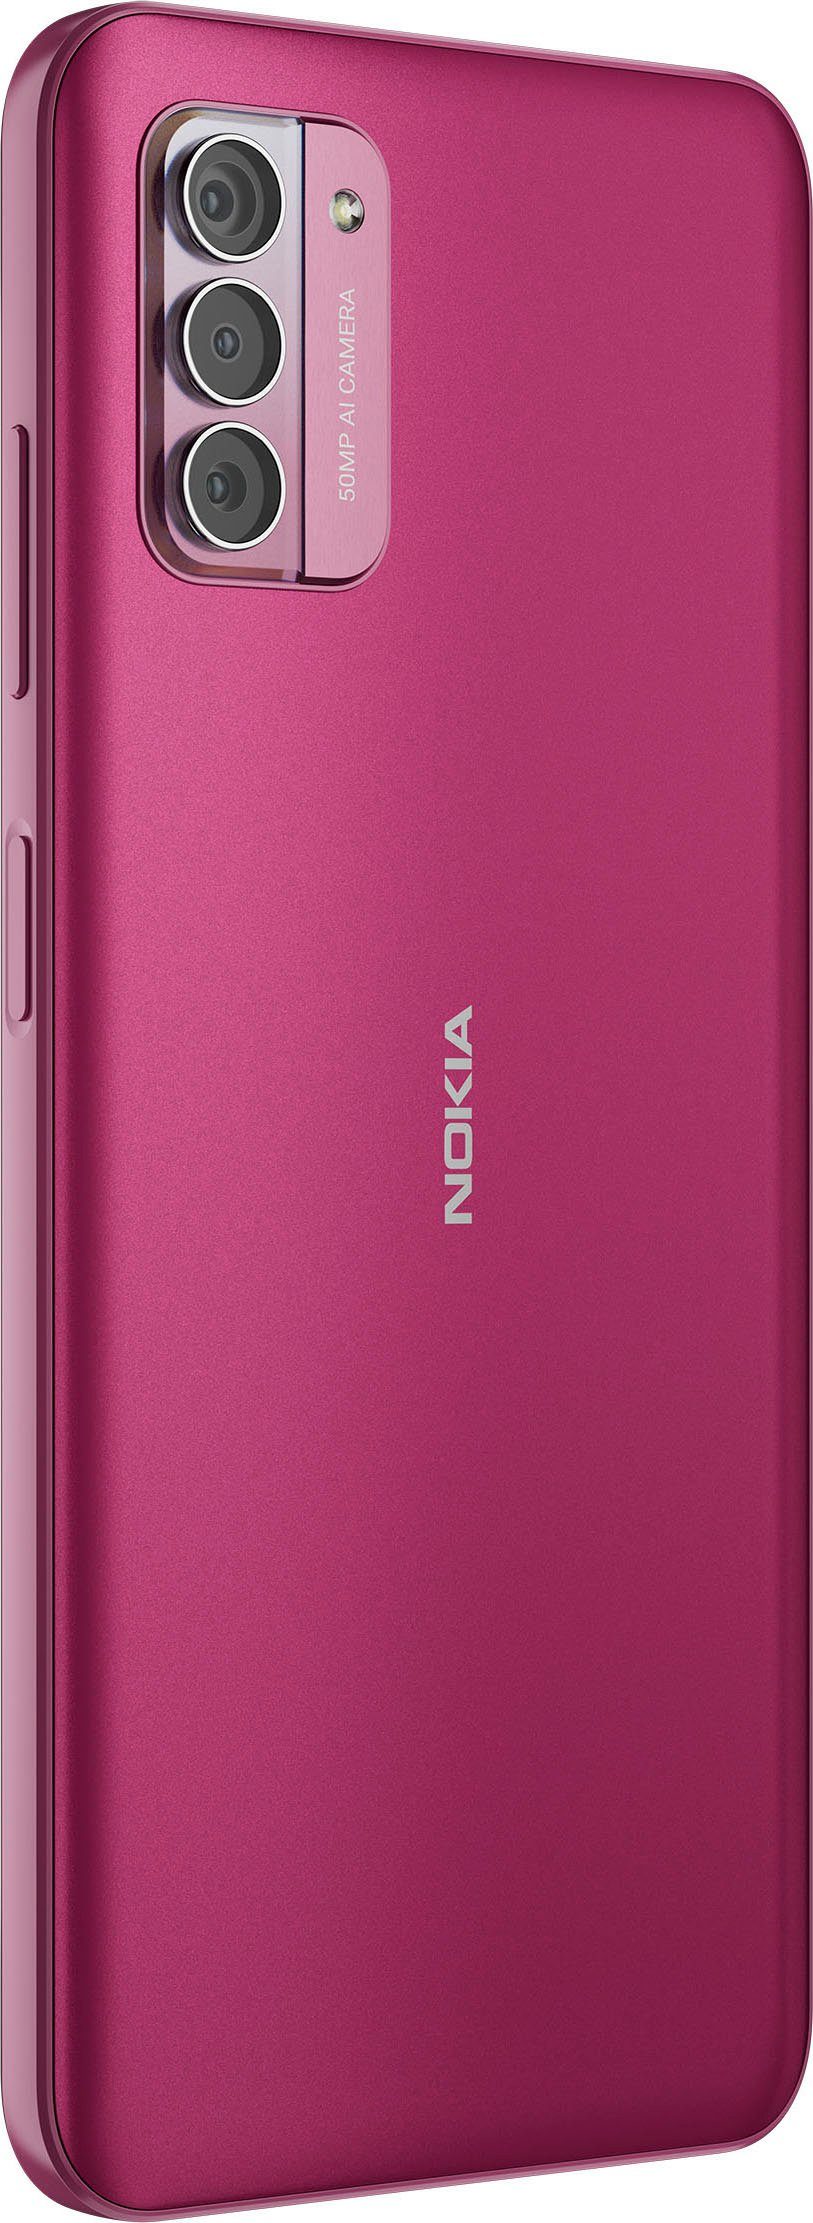 Smartphone Nokia (16,9 Kamera) MP cm/6,65 Speicherplatz, 128 50 pink G42 Zoll, GB